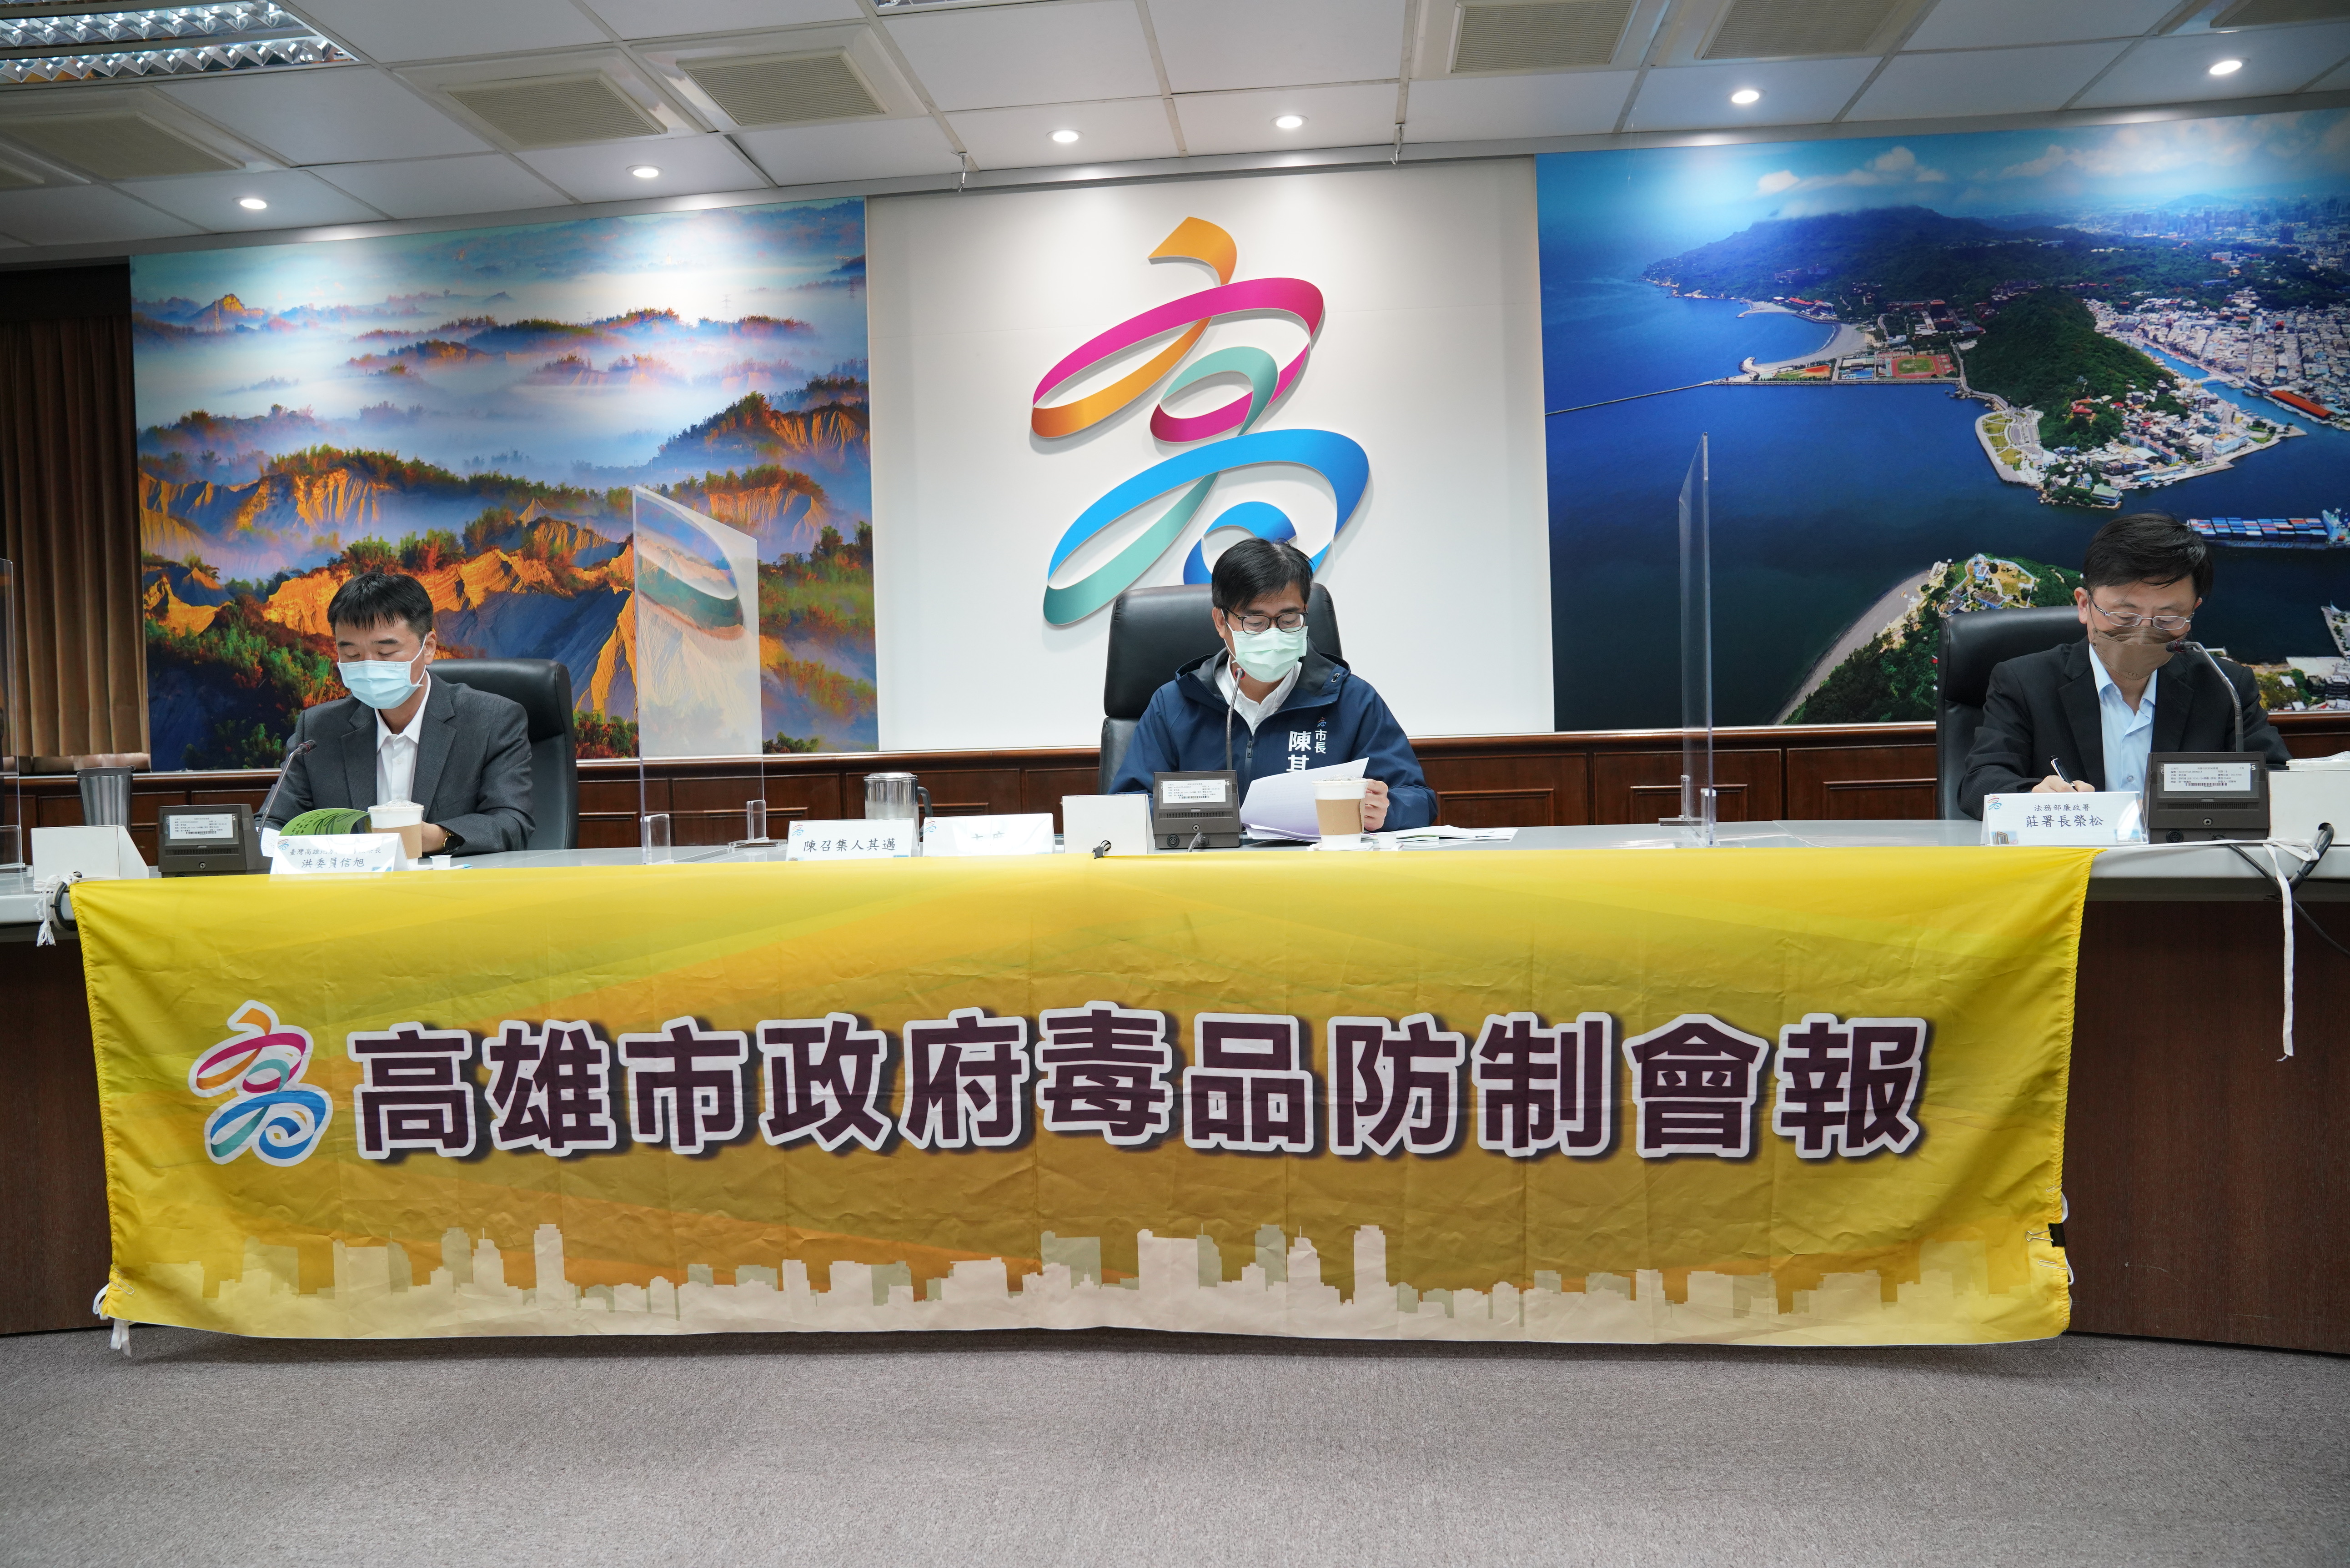 陳其邁市長召開毒品防制會報 集結跨網絡專家學者阻絕毒品